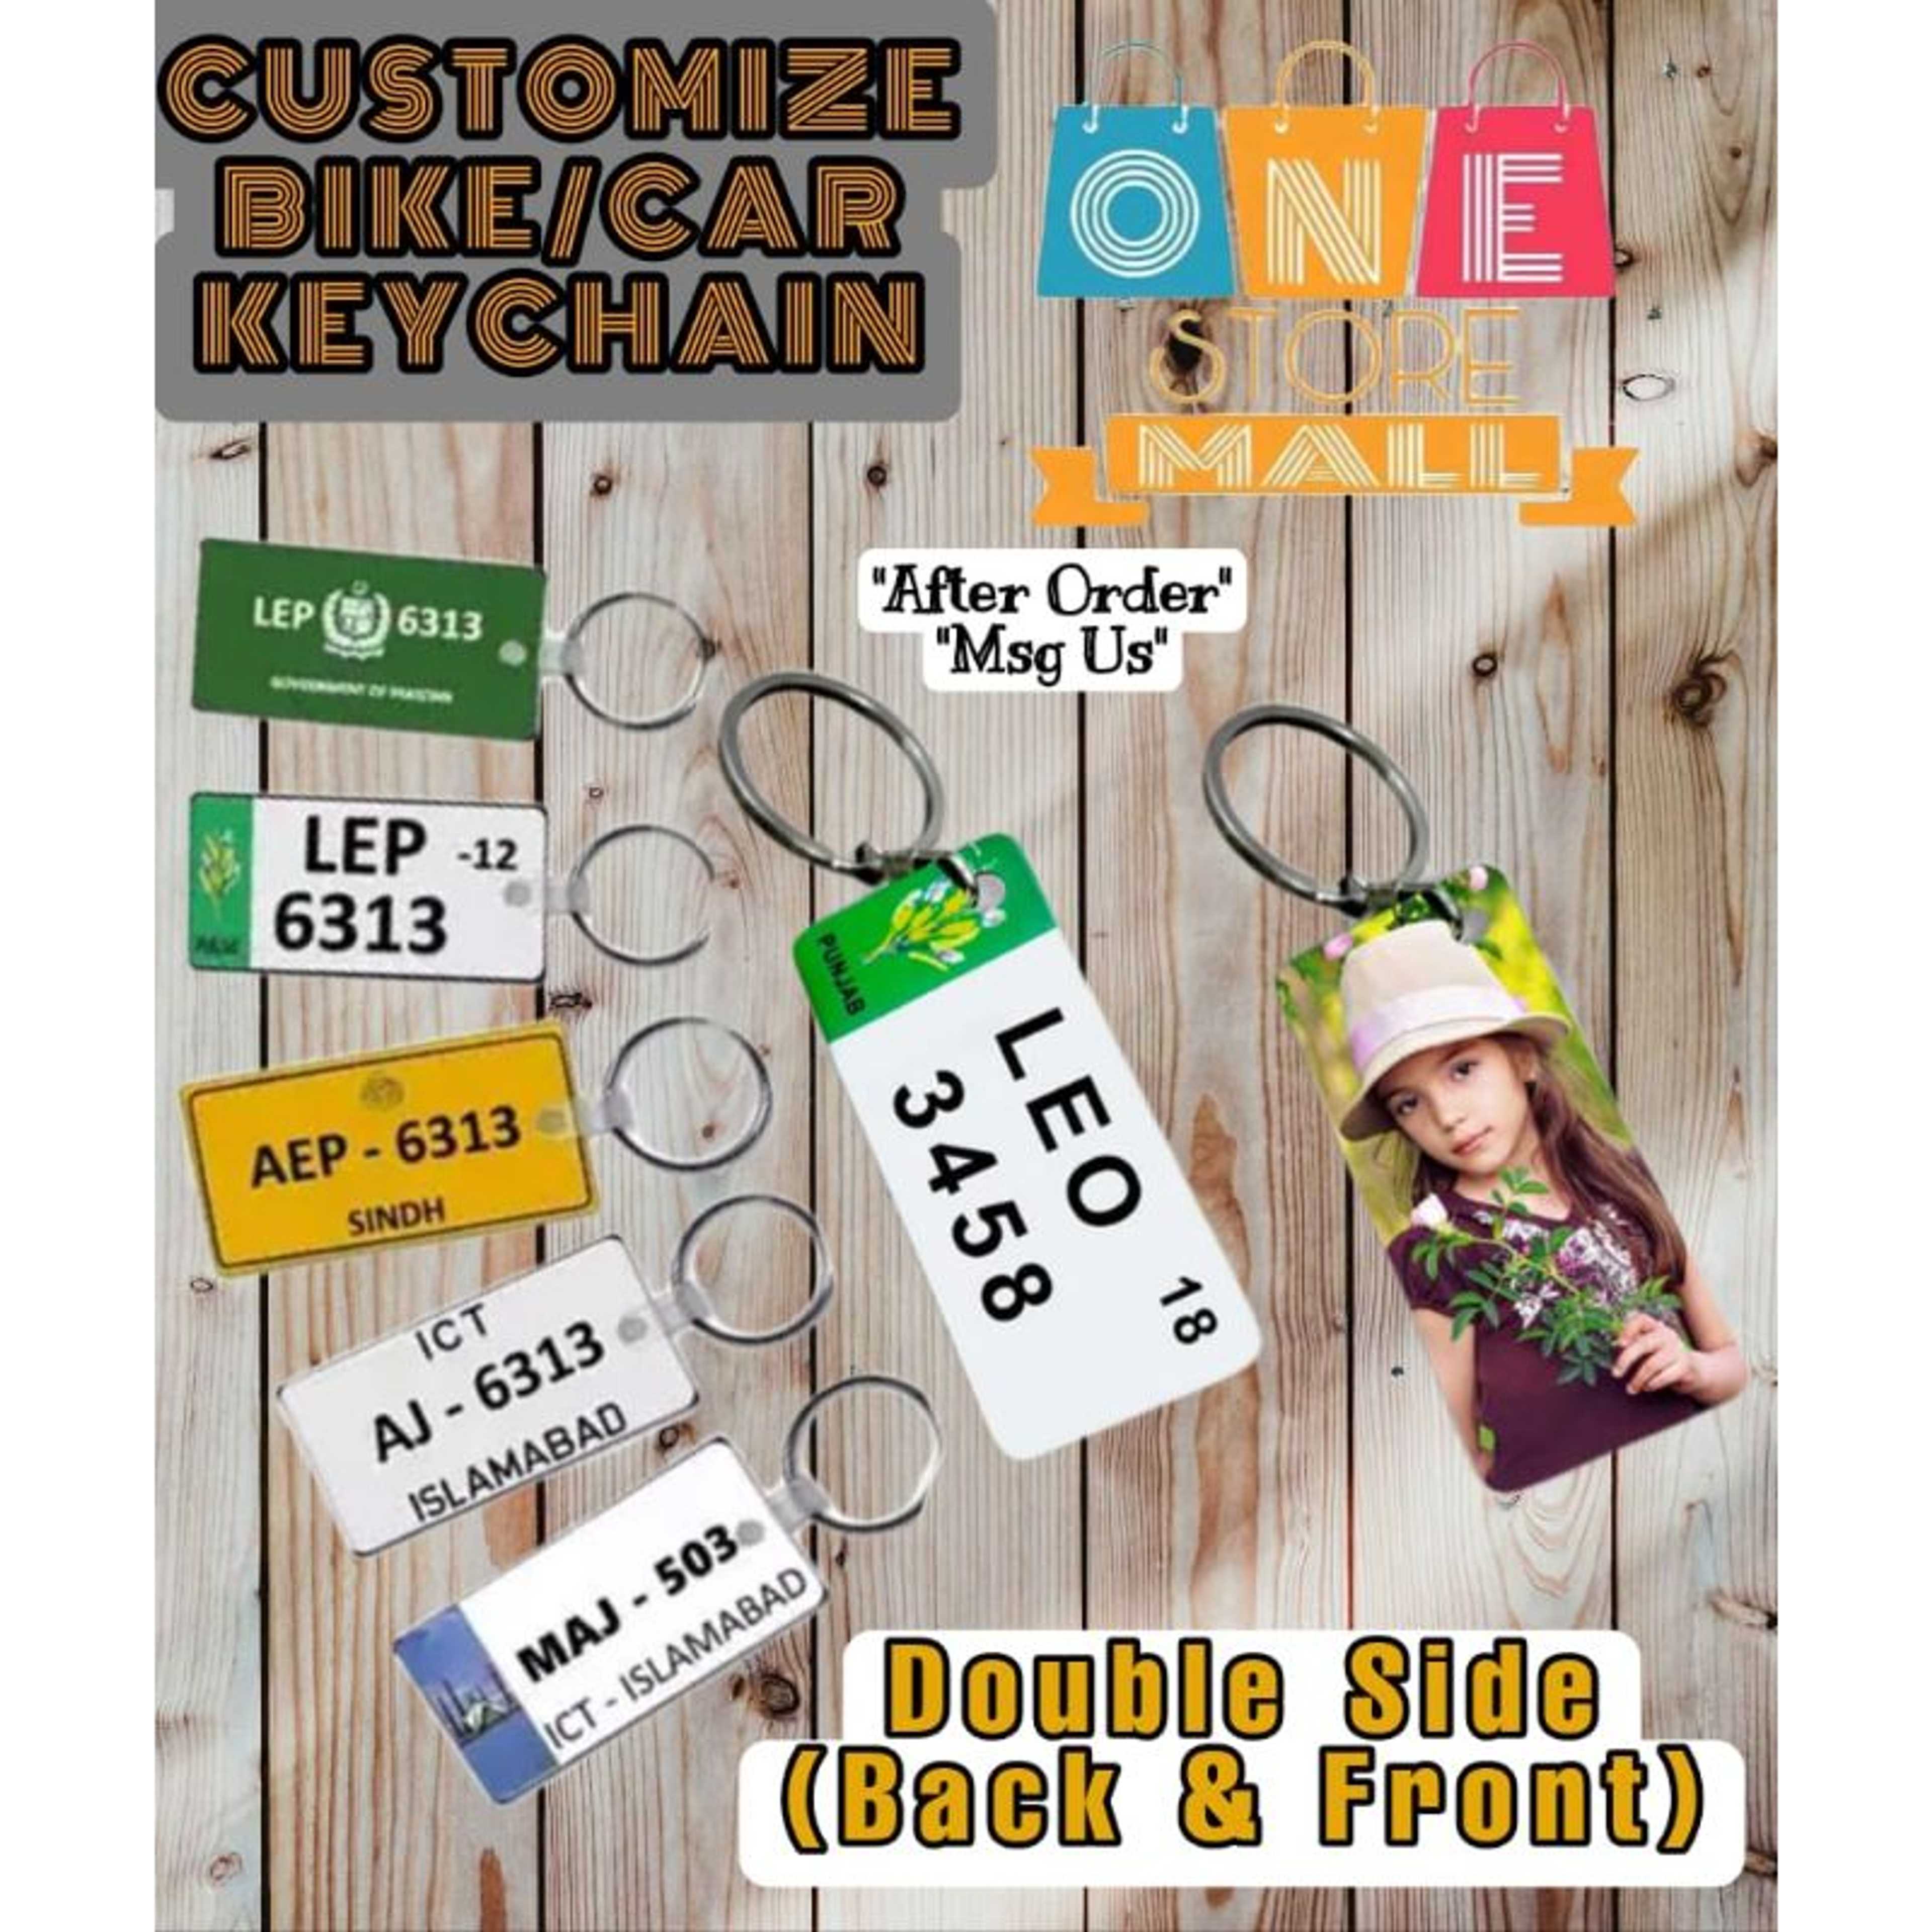 Keychain / Bike-Car Keychain / Customize Keychain